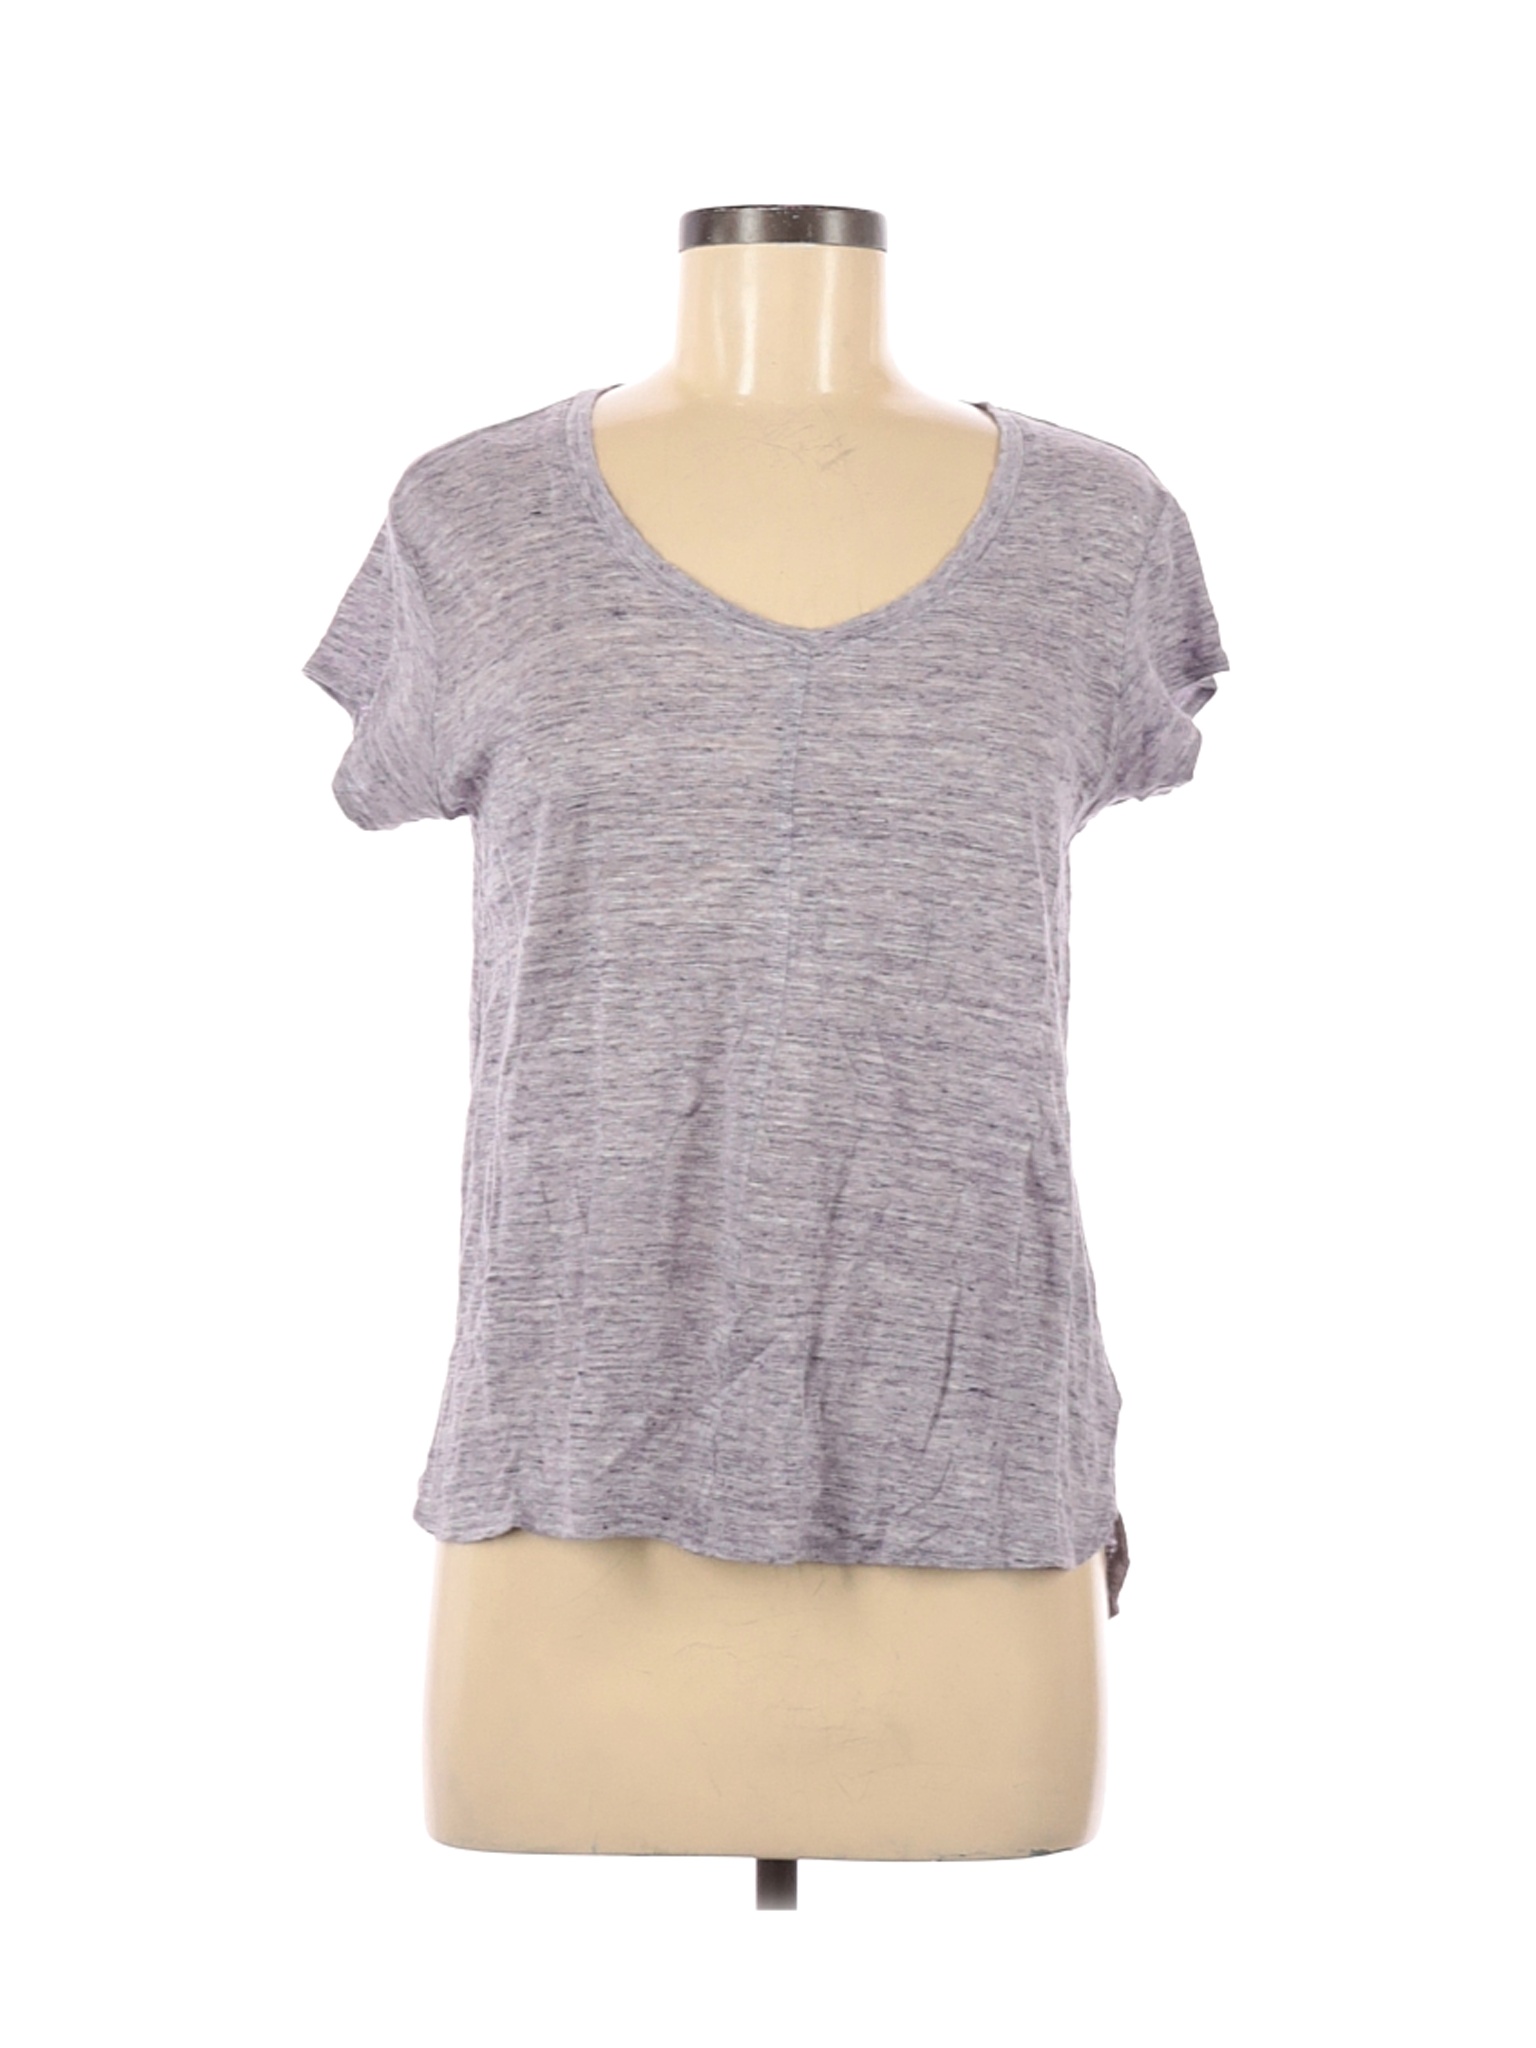 Tahari Women Gray Short Sleeve T-Shirt M | eBay